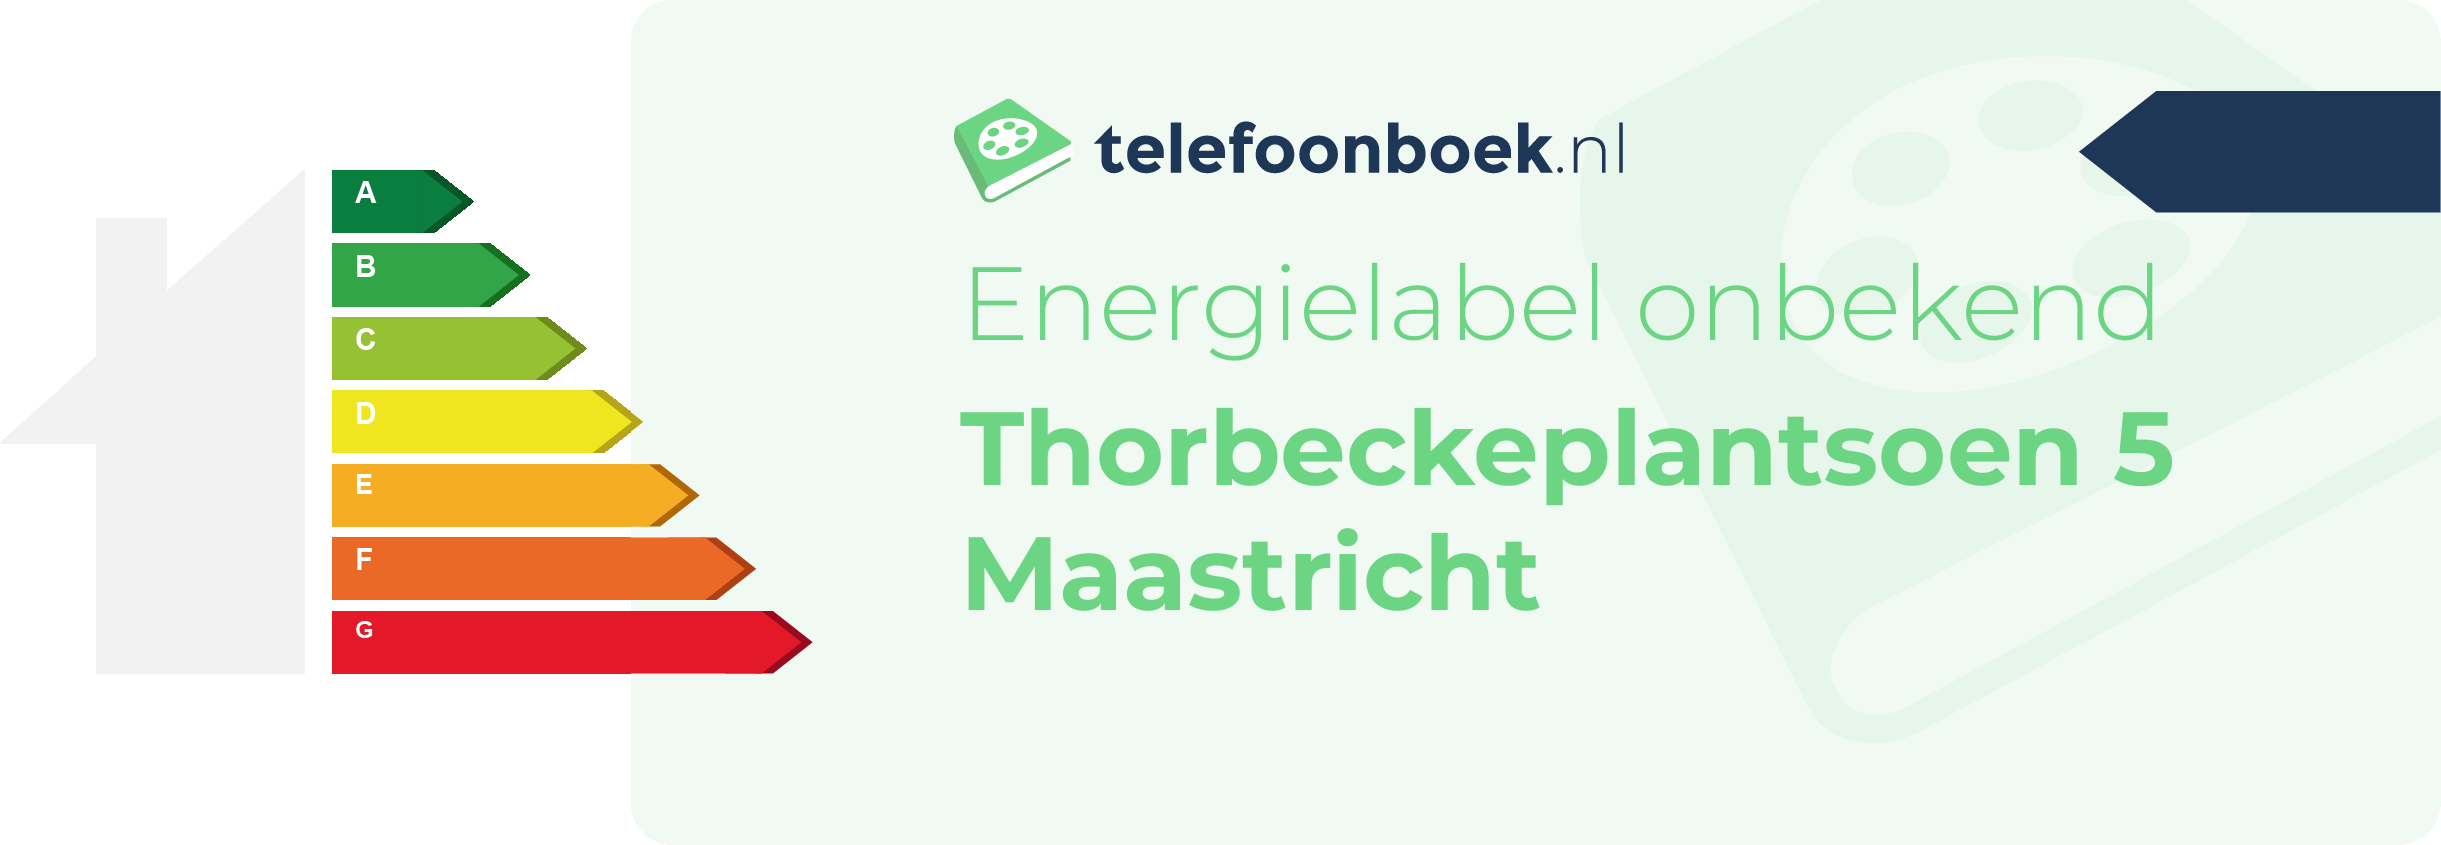 Energielabel Thorbeckeplantsoen 5 Maastricht